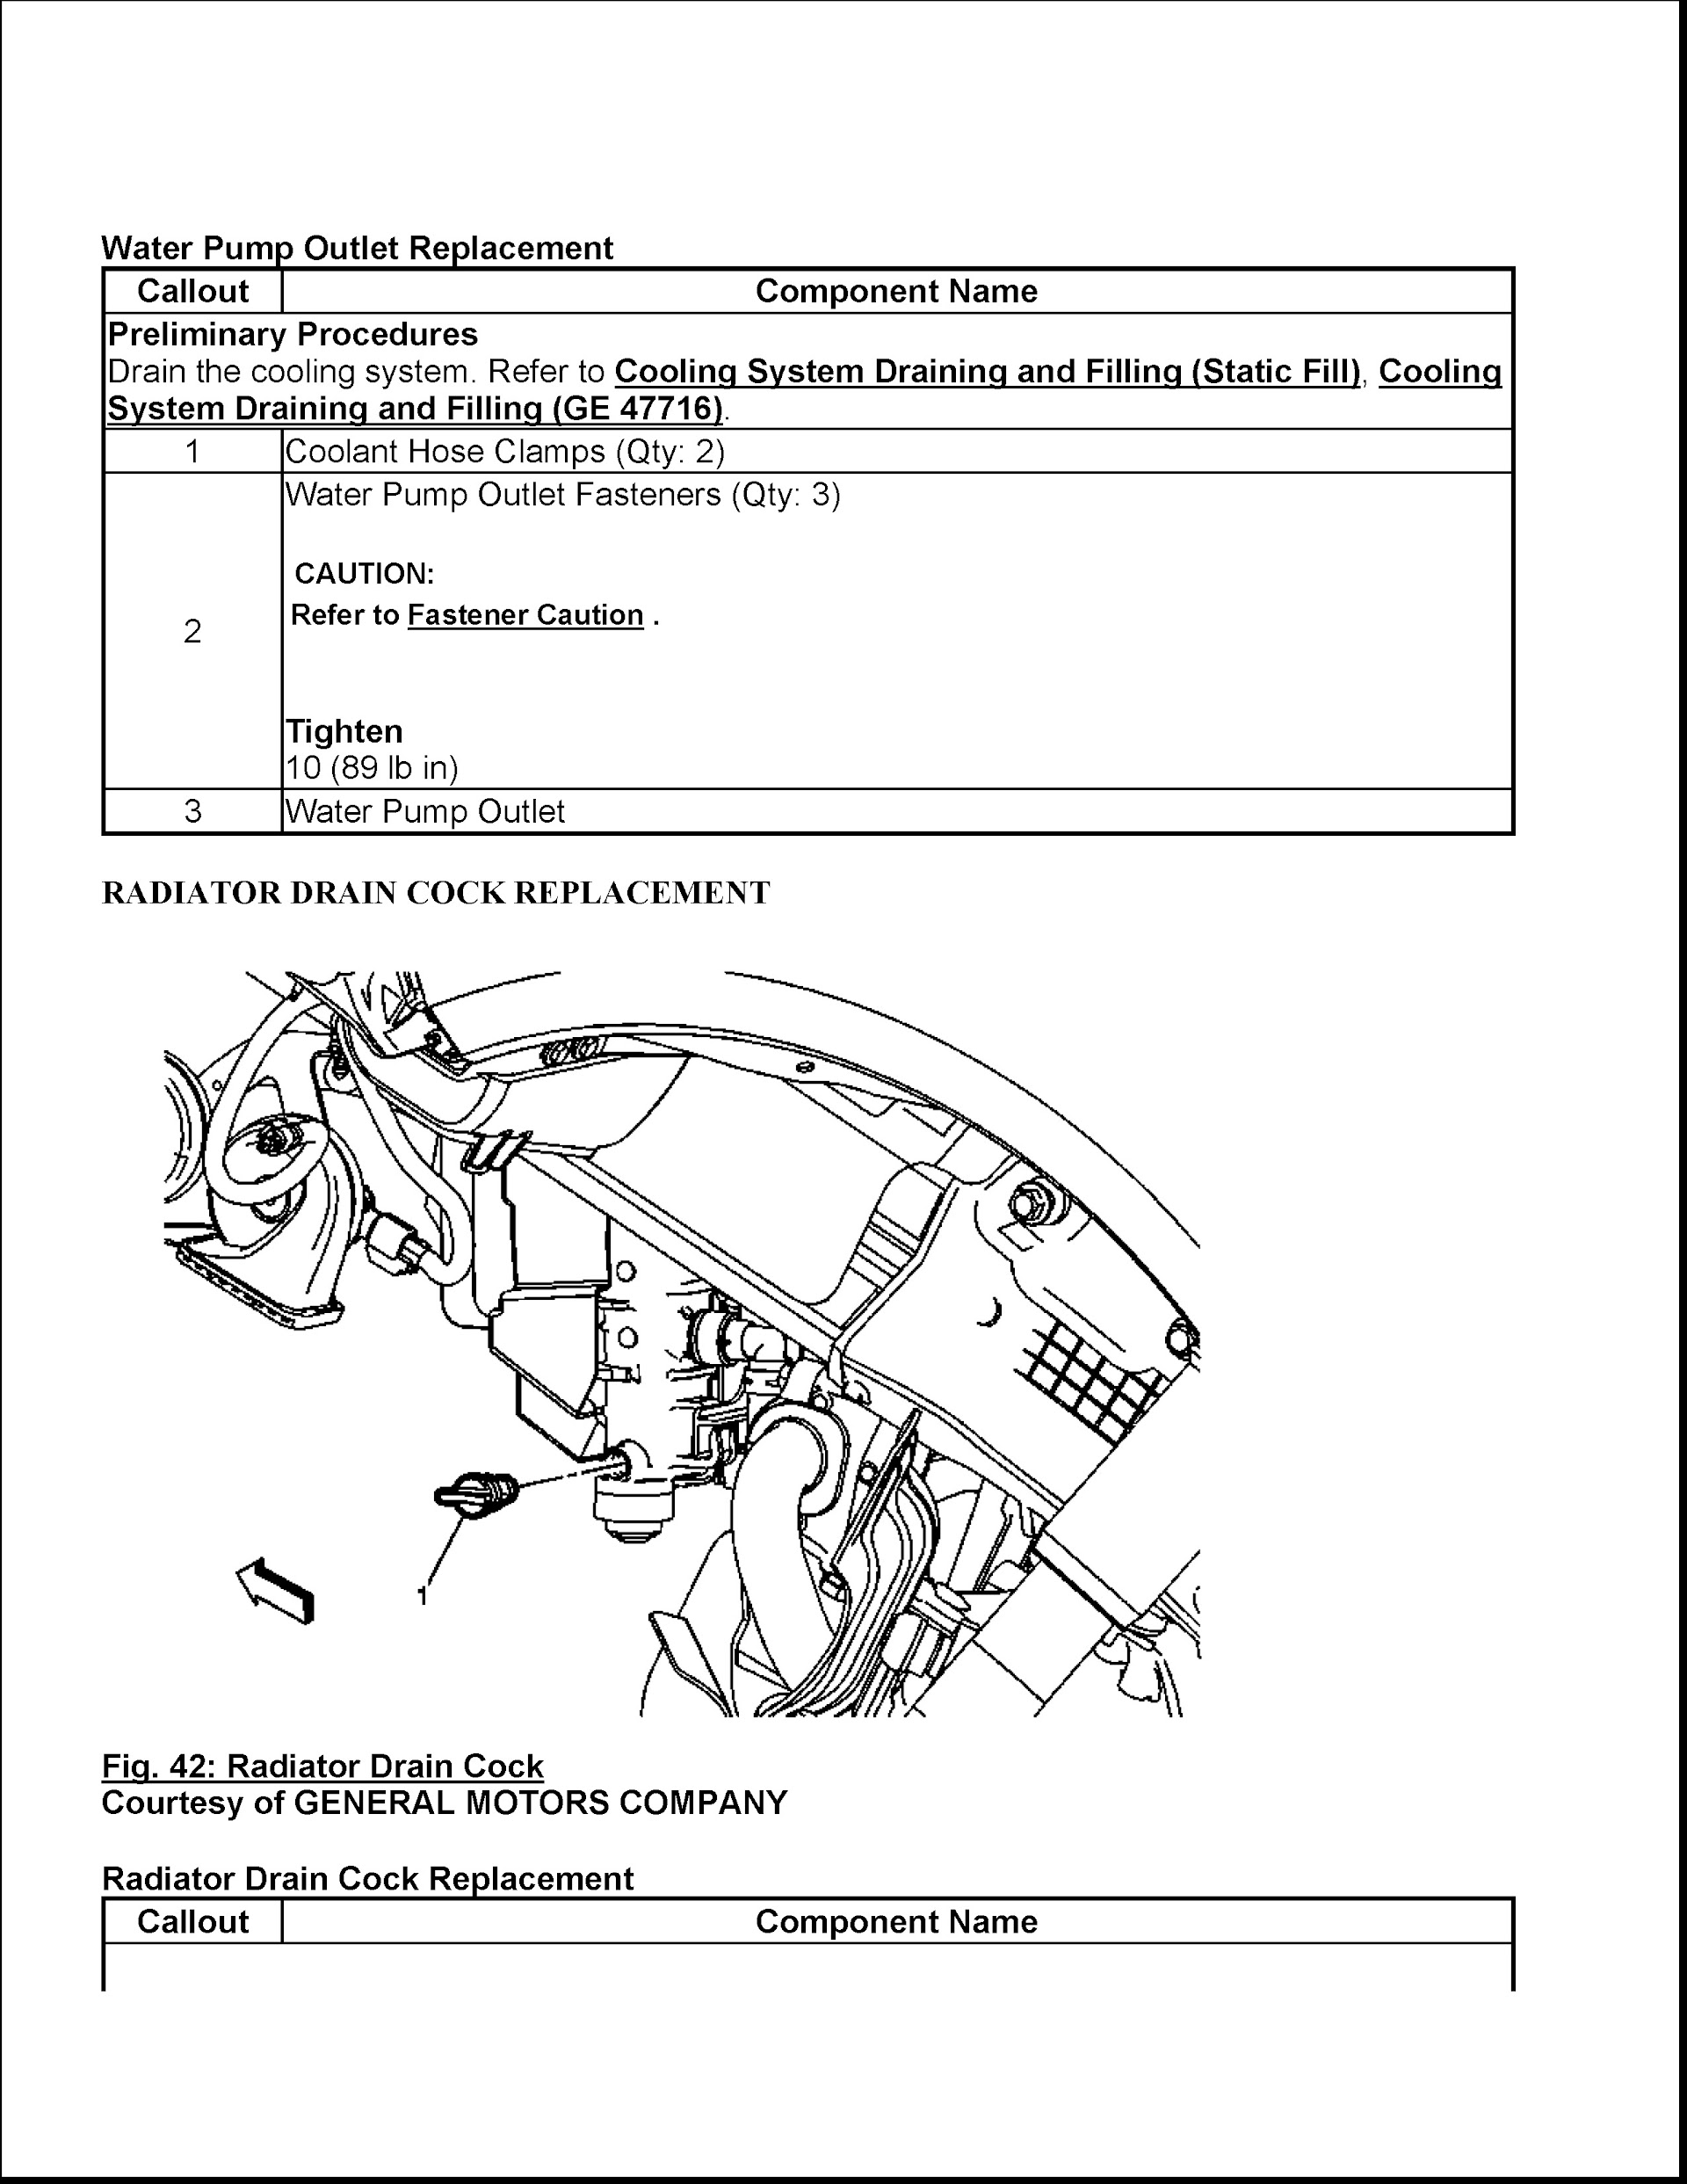 CONTENTS: 2014-2017 Chevrolet Corvette Repair Manual C7, water pump repalcement